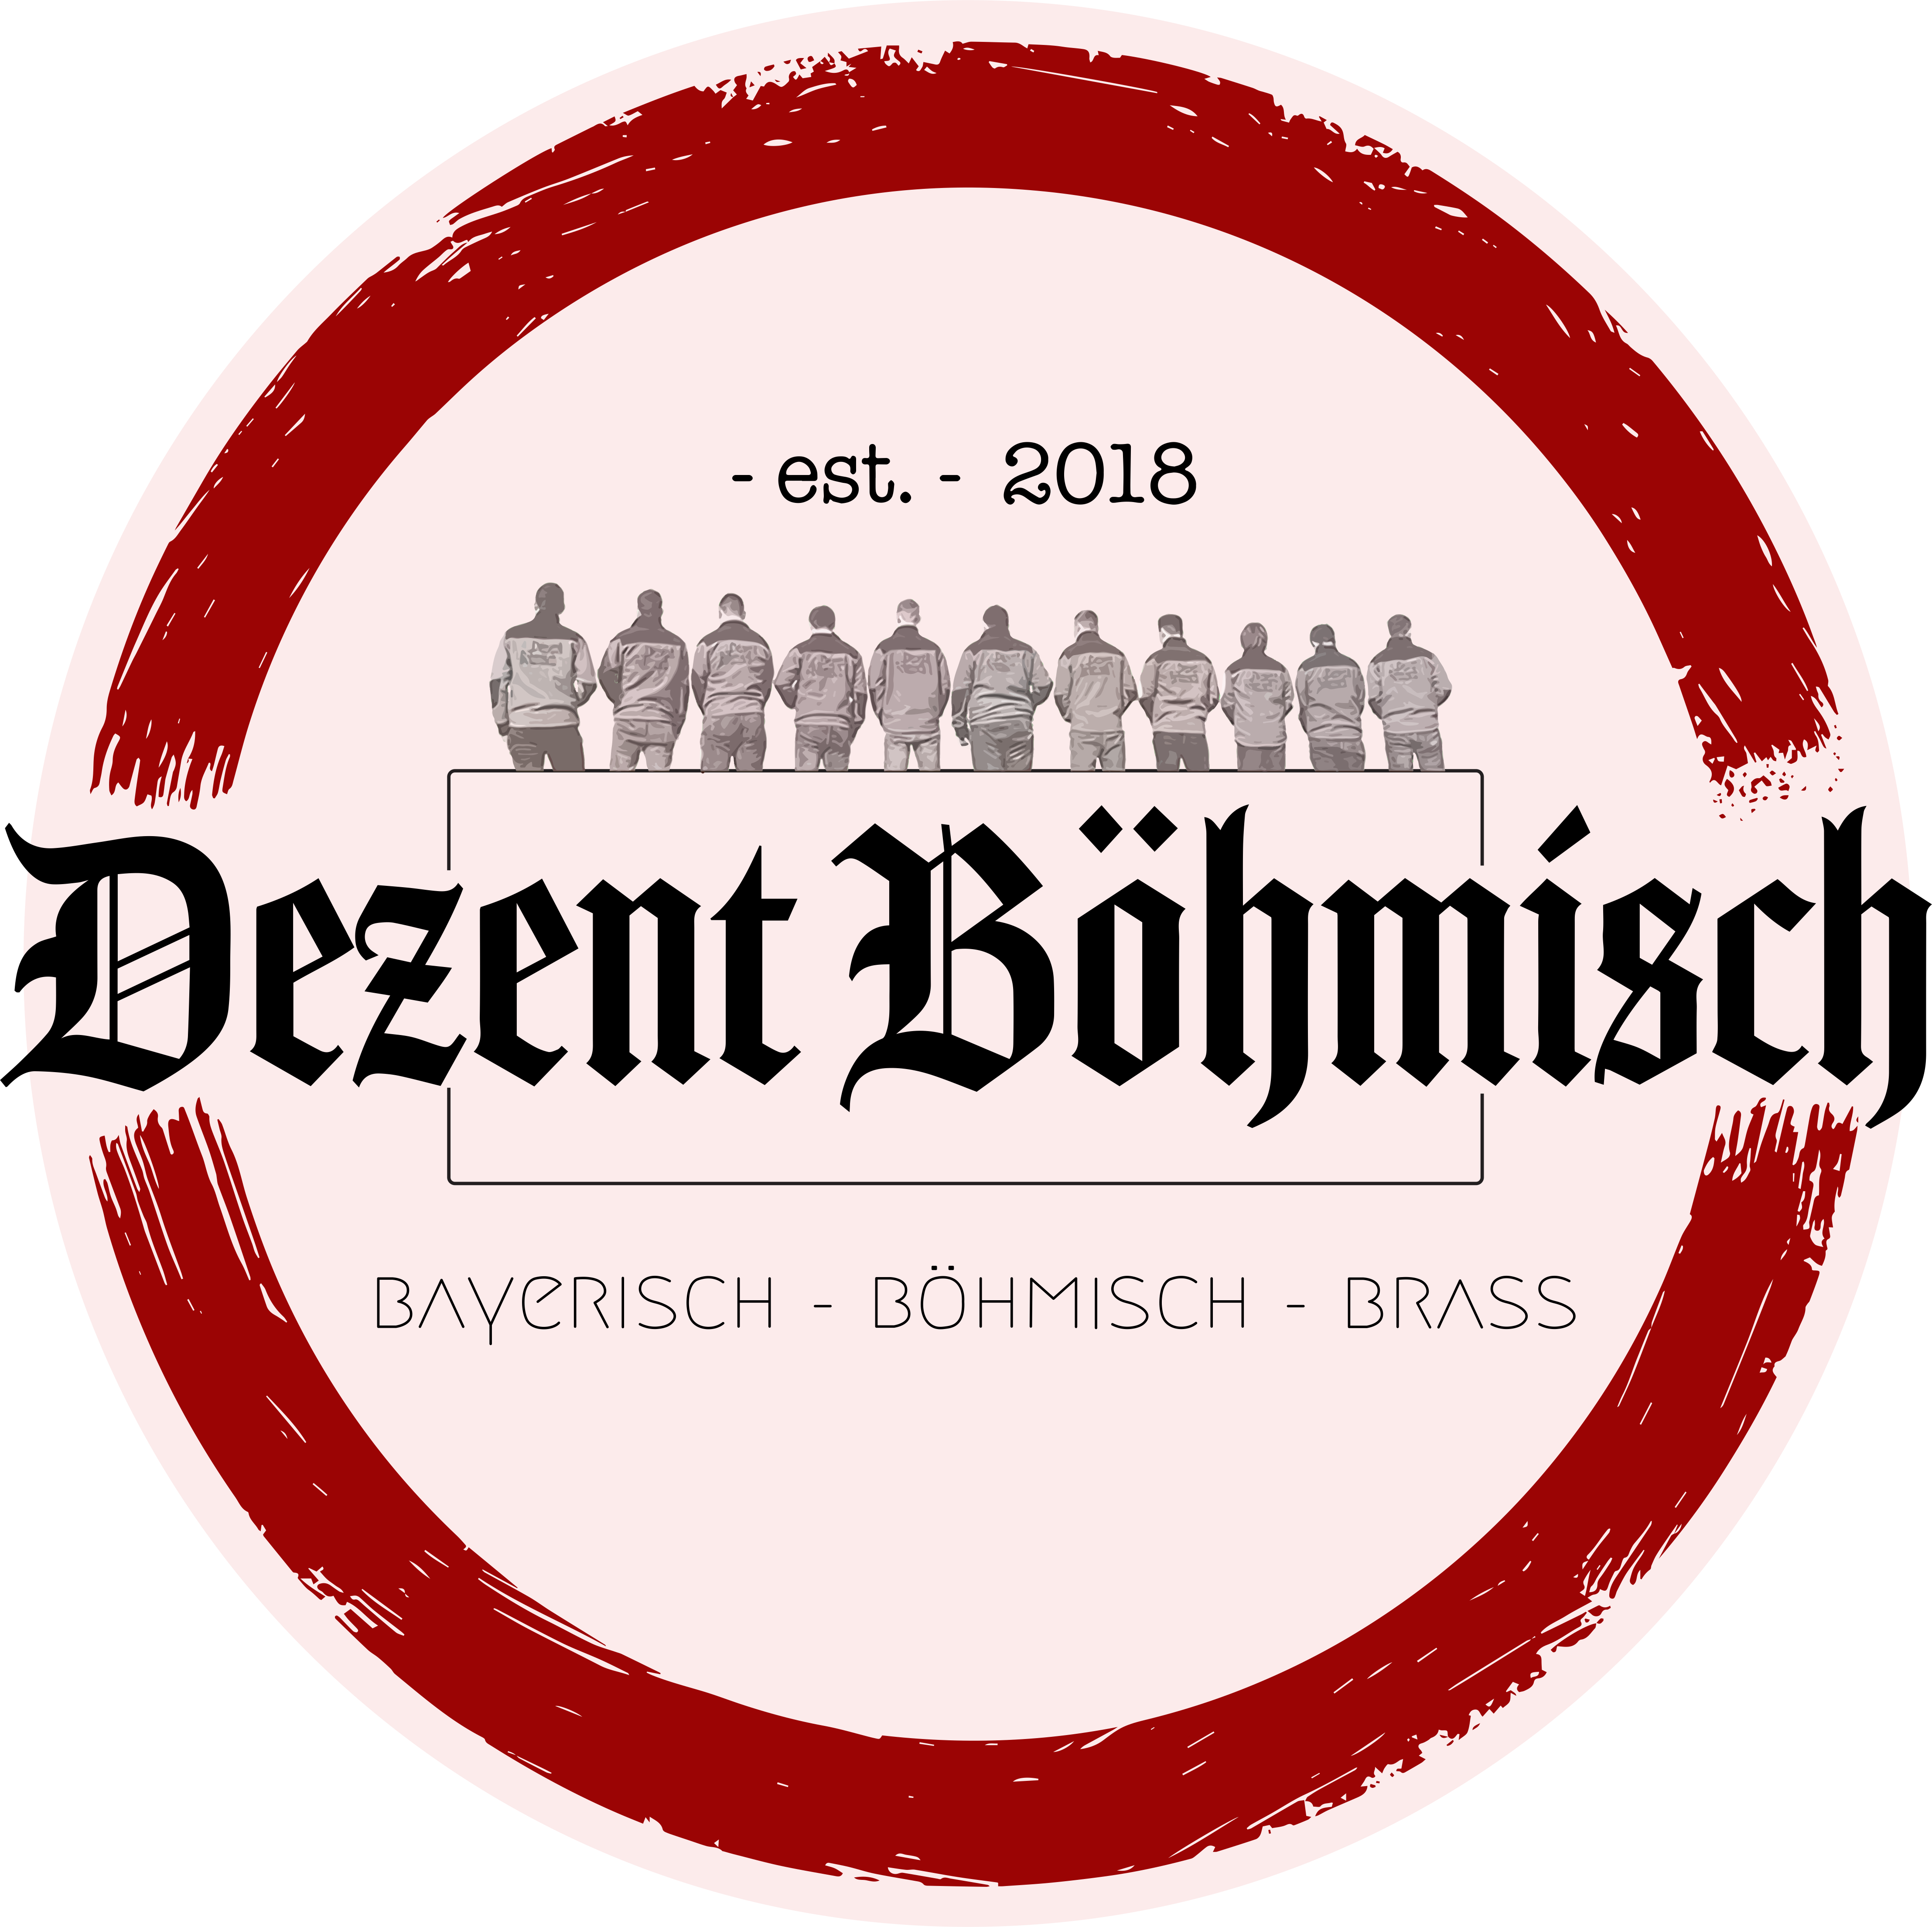 Dezent Böhmisch - Bayerisch Böhmisch Brass